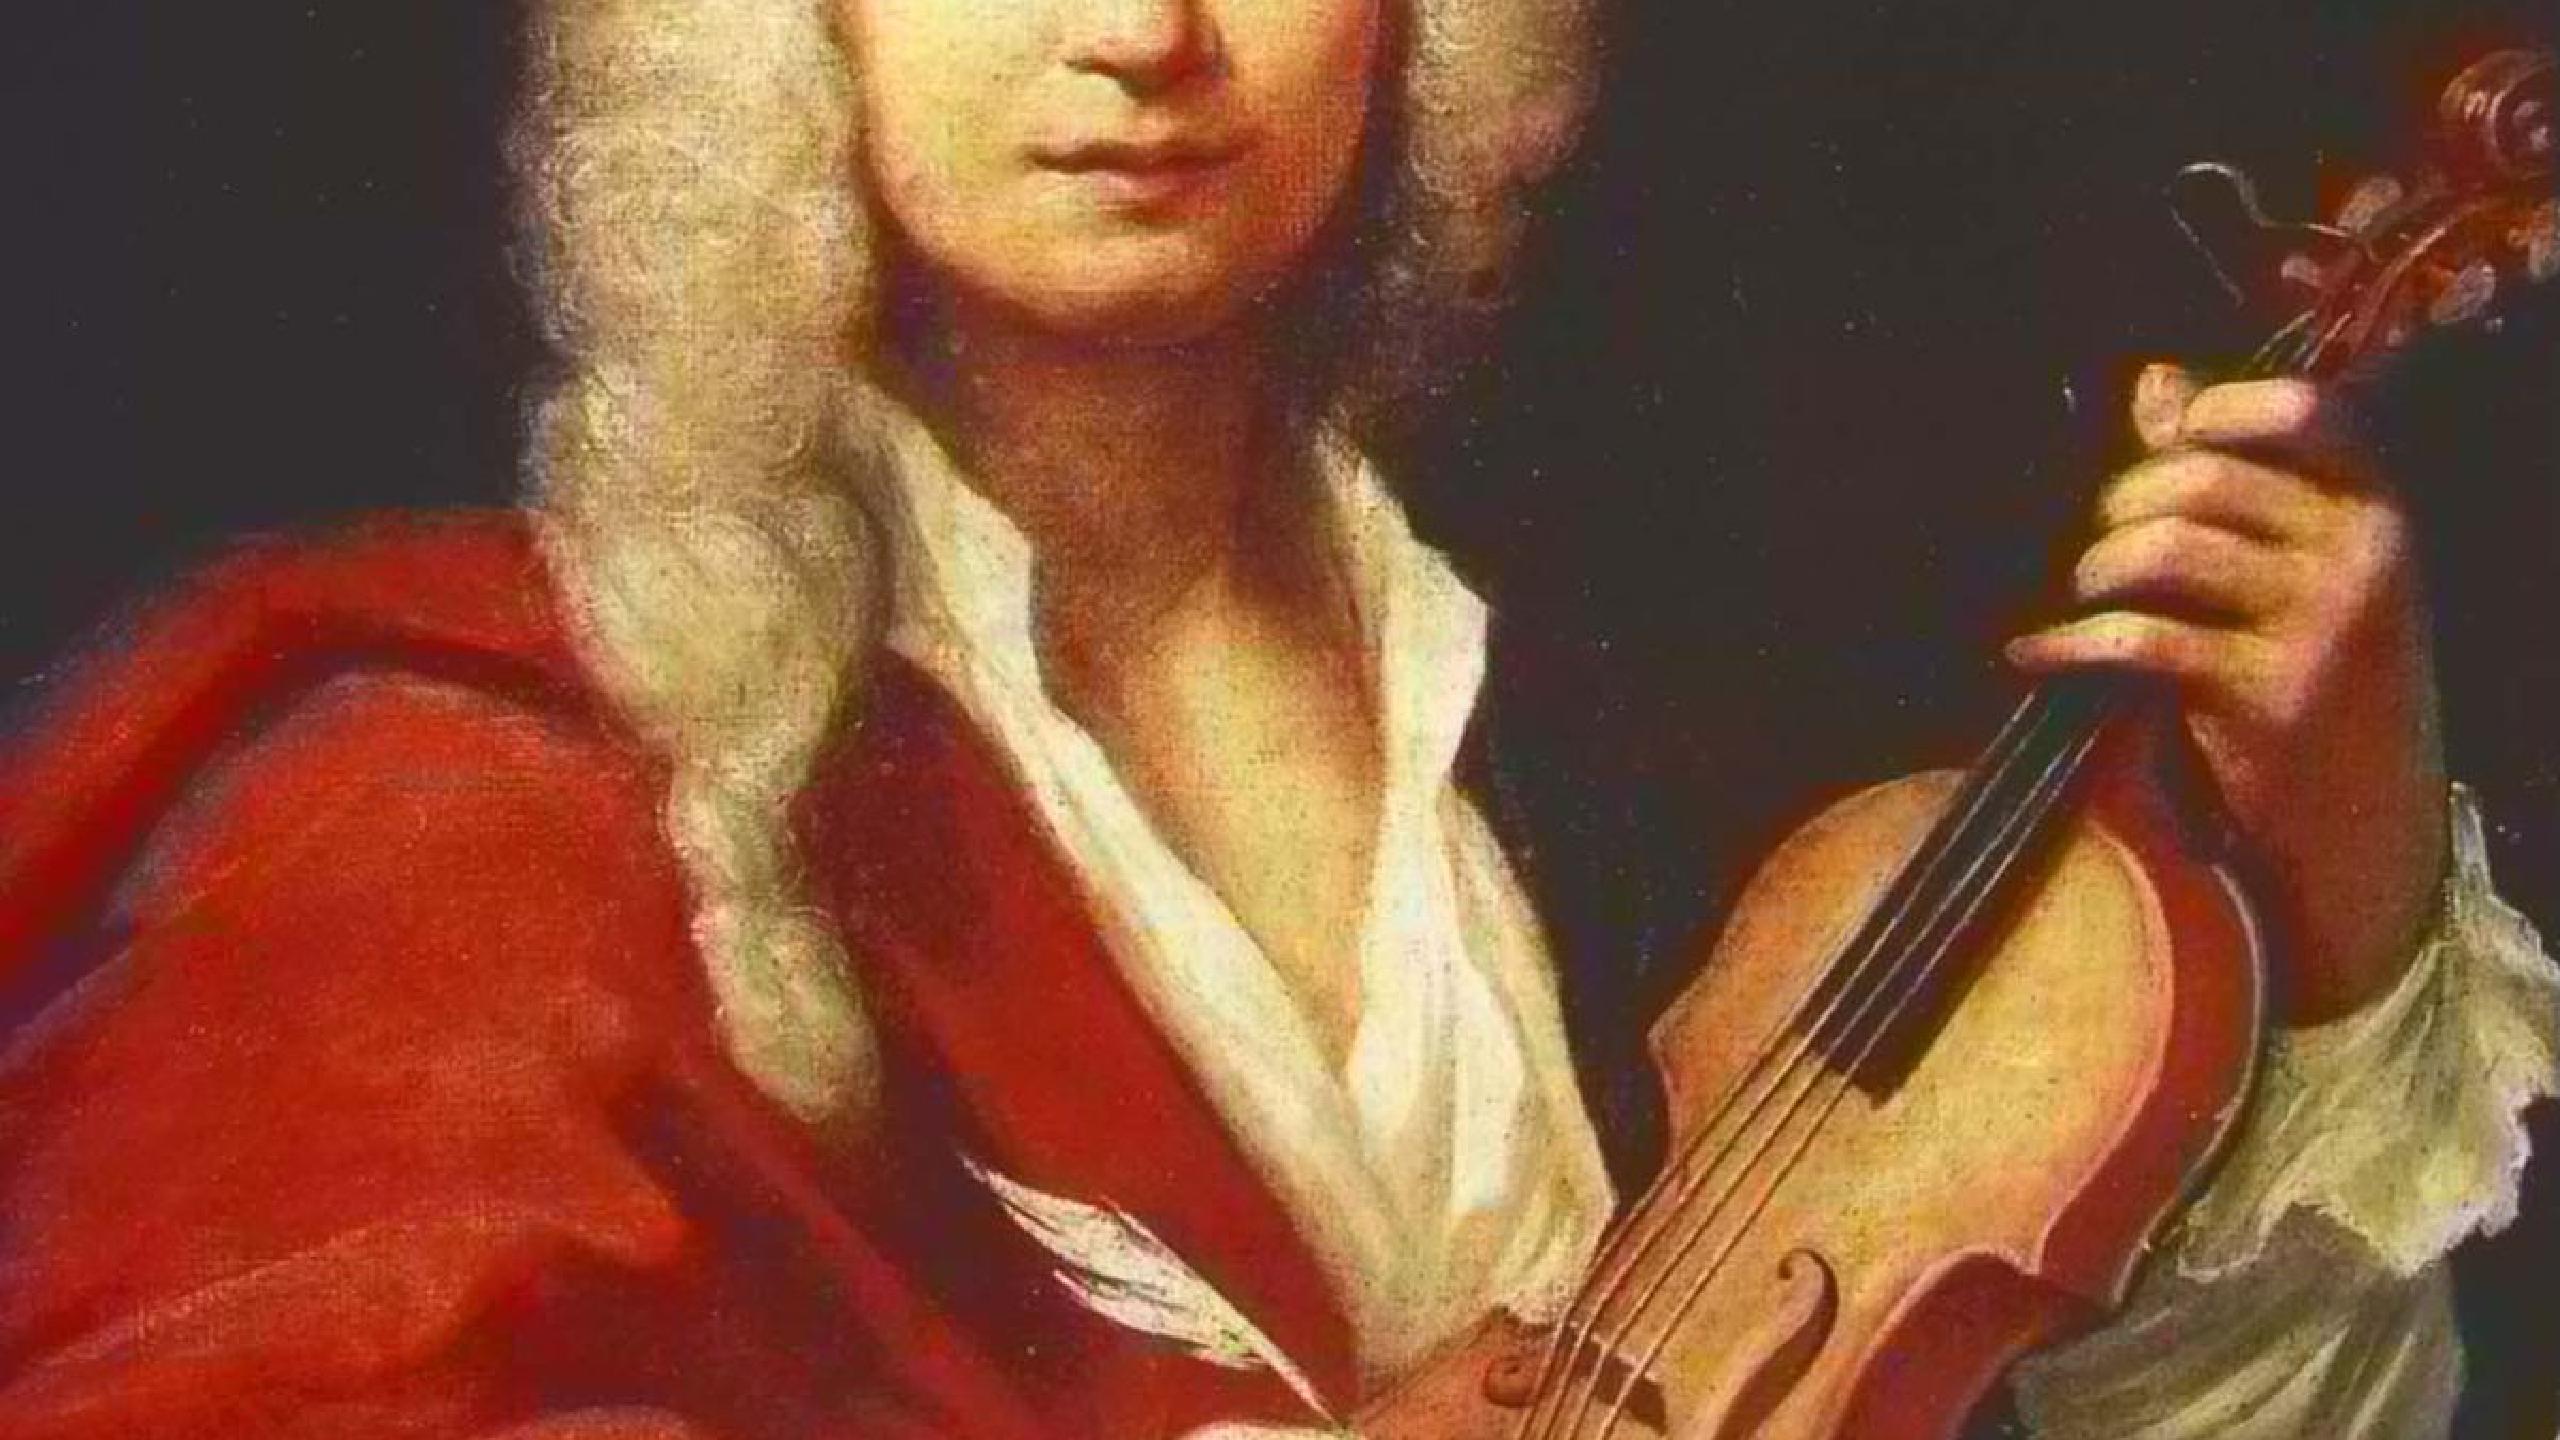 Fotografía promocional de Concierto de Antonio Vivaldi en Dublin